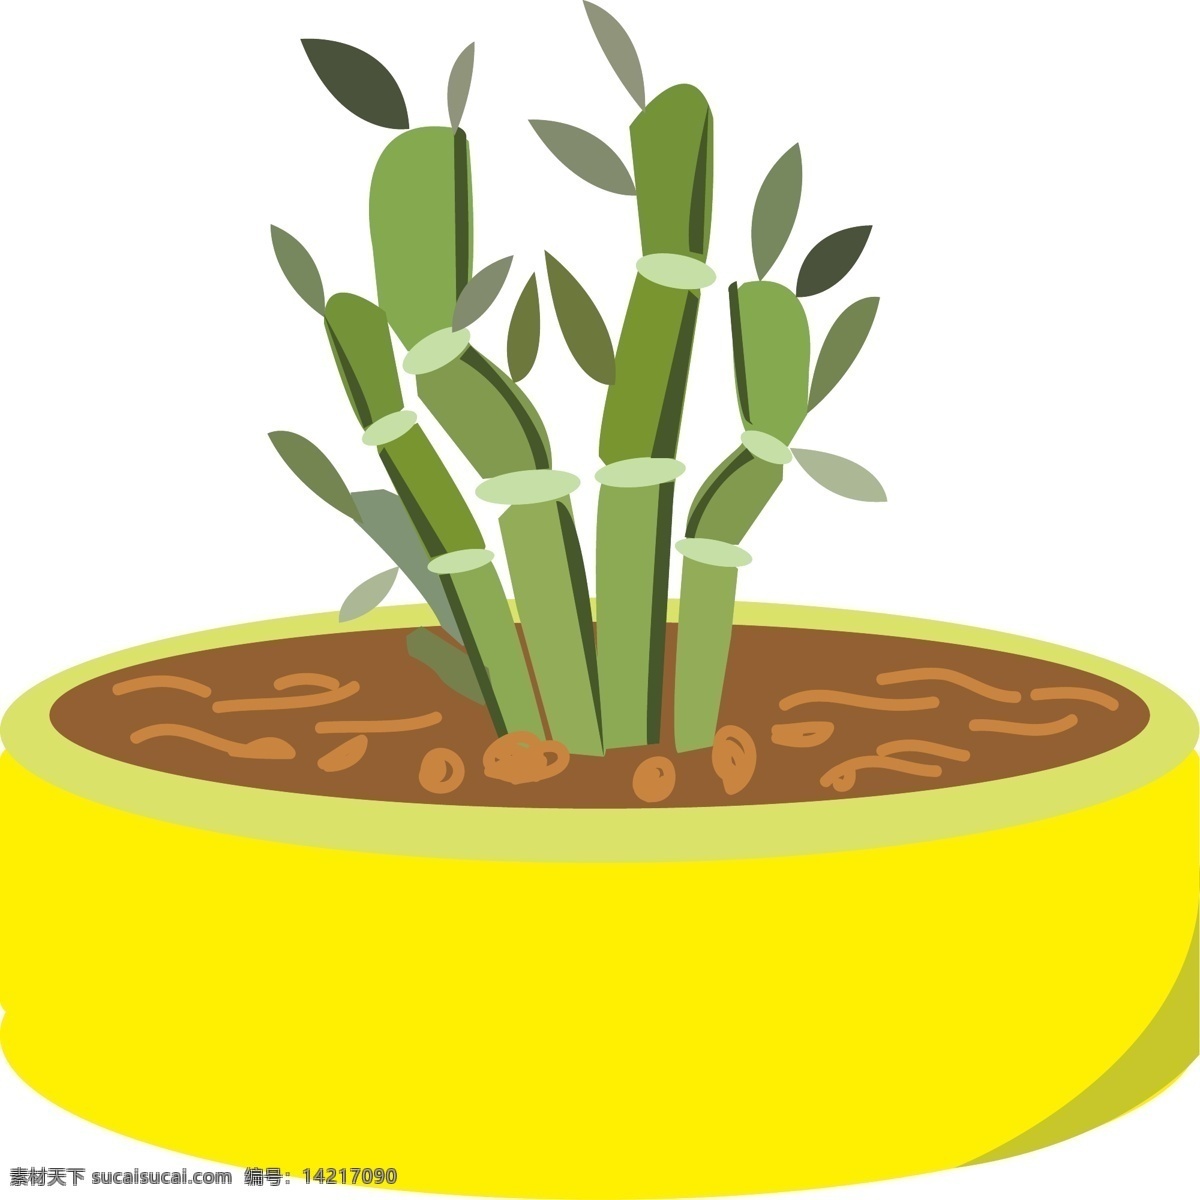 黄色 植物 盆栽 插画 圆形的盆栽 卡通植物插画 盆景 黄色的花盆 绿色的植物 盆景插画 盆栽插画